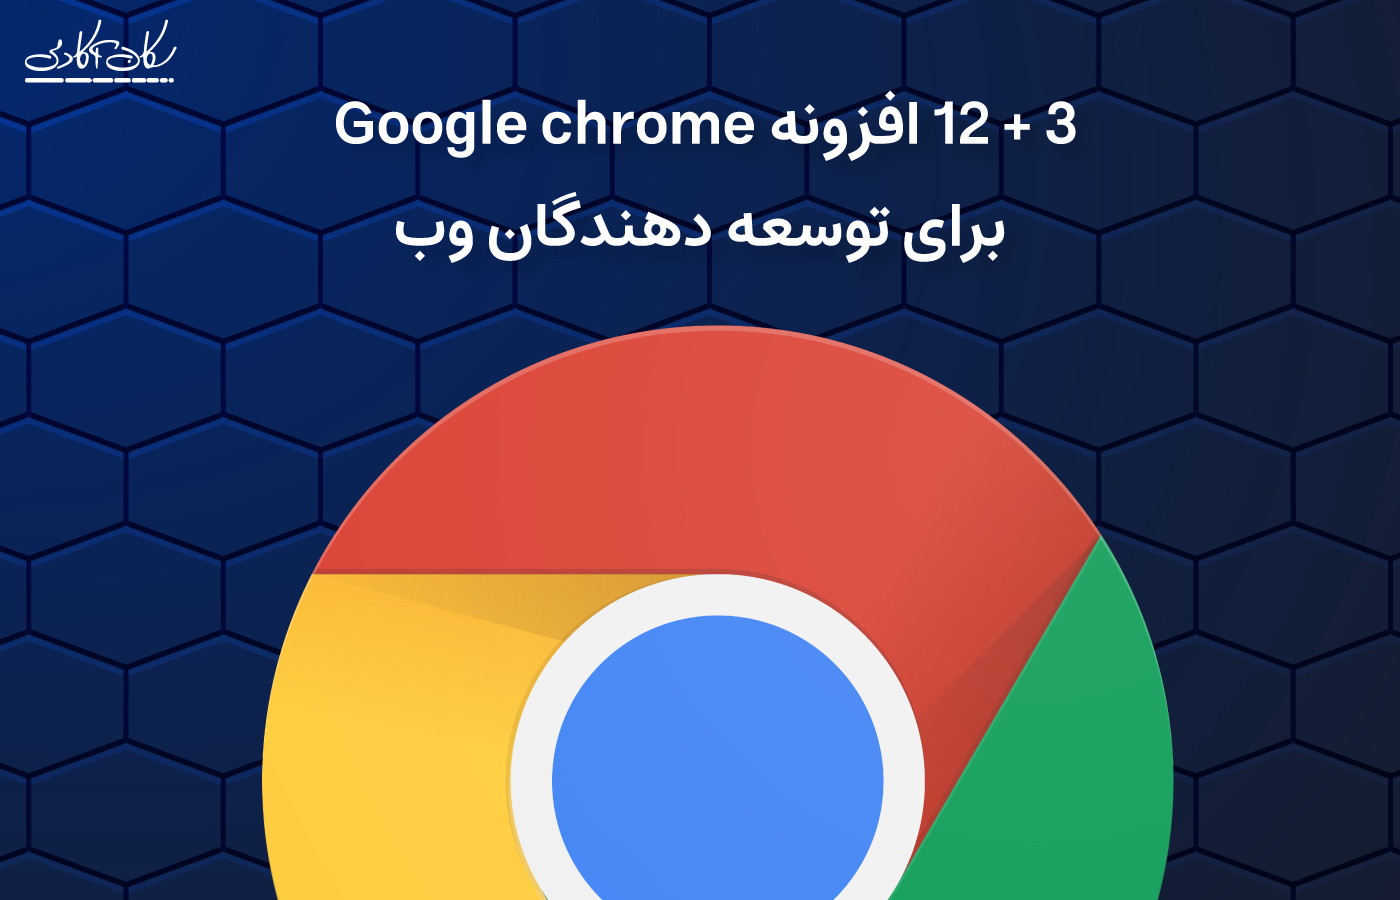 12+3 افزونه ی جالب و مفید Google Chrome که هر توسعه دهنده ی وب به آن احتیاج دارد